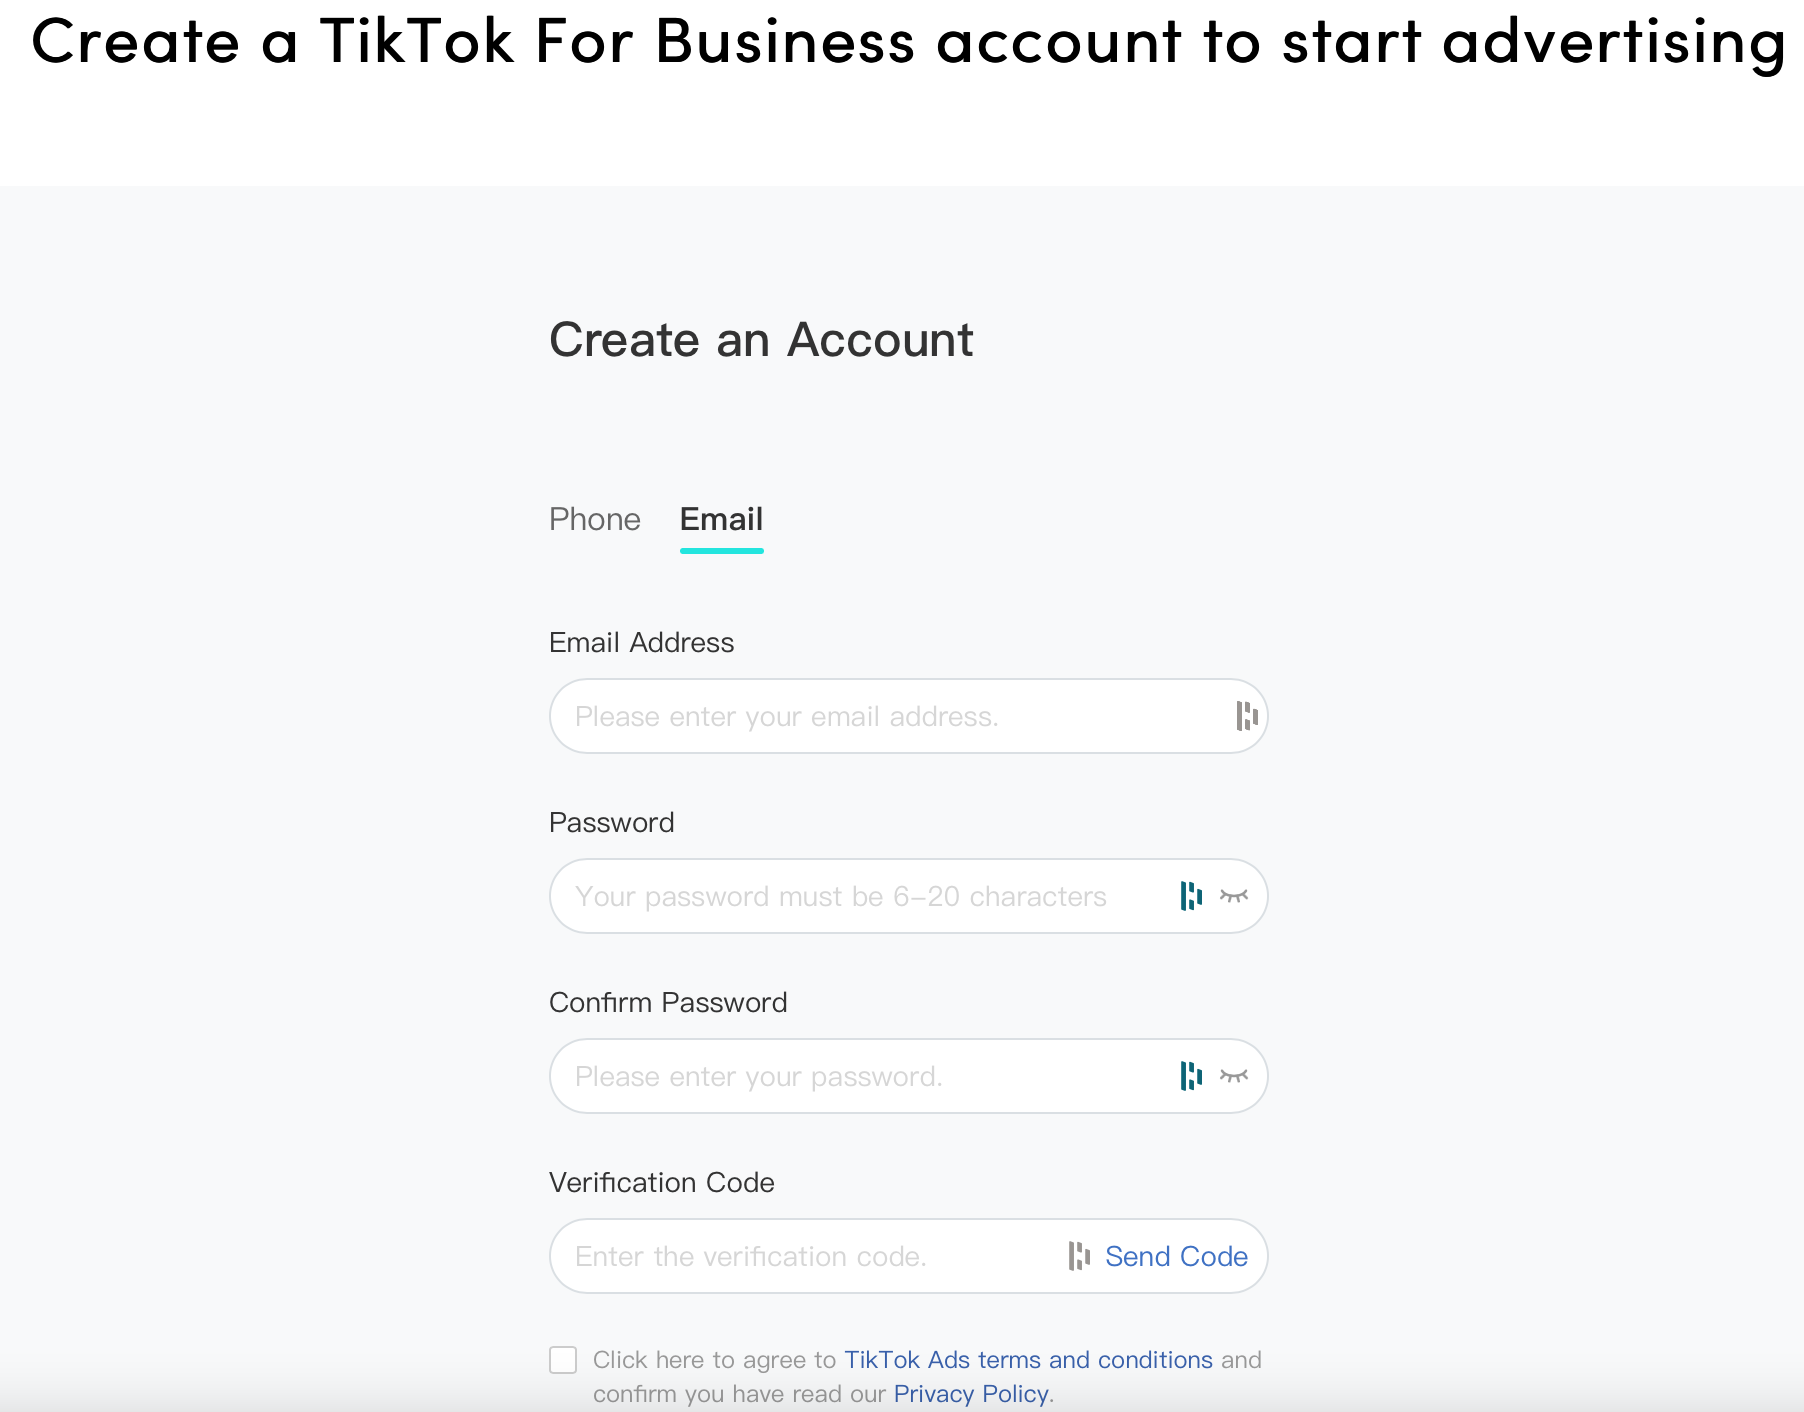 Anmeldung bei TikTok for business